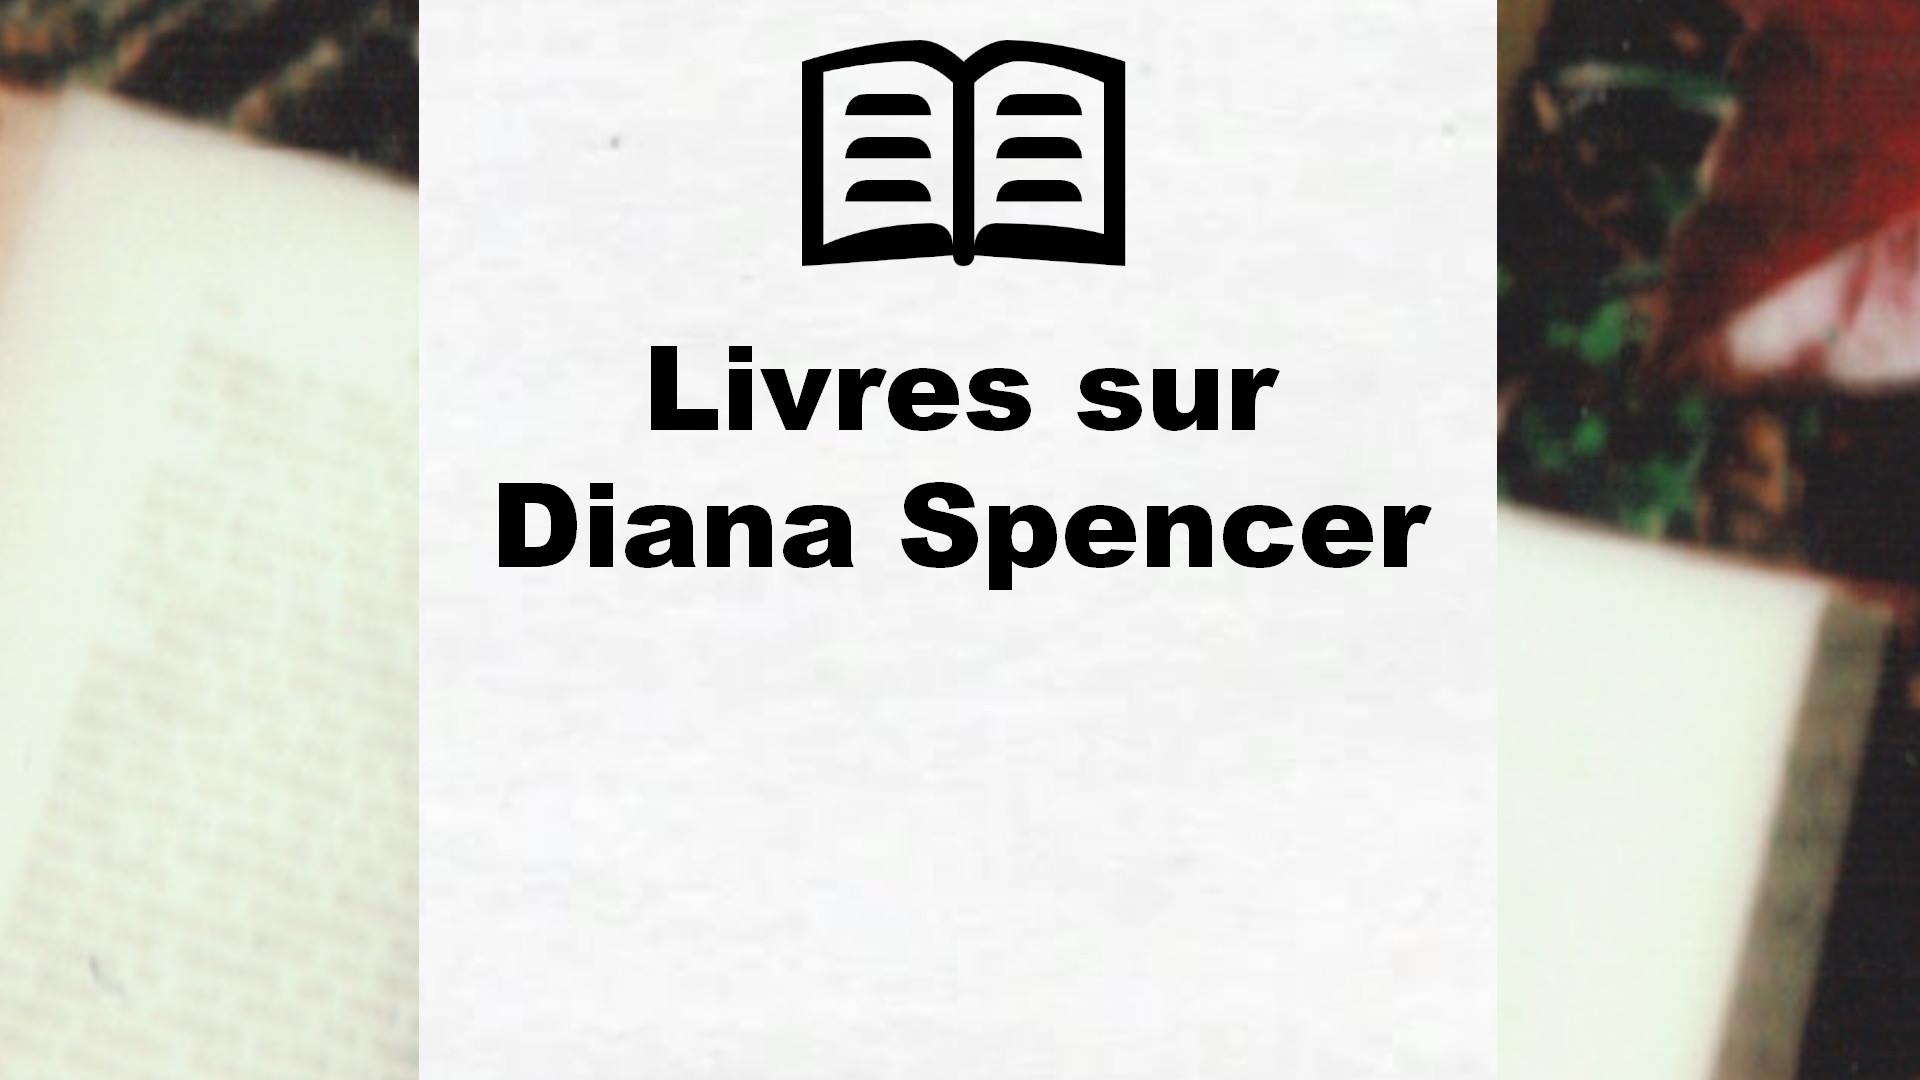 Livres sur Diana Spencer